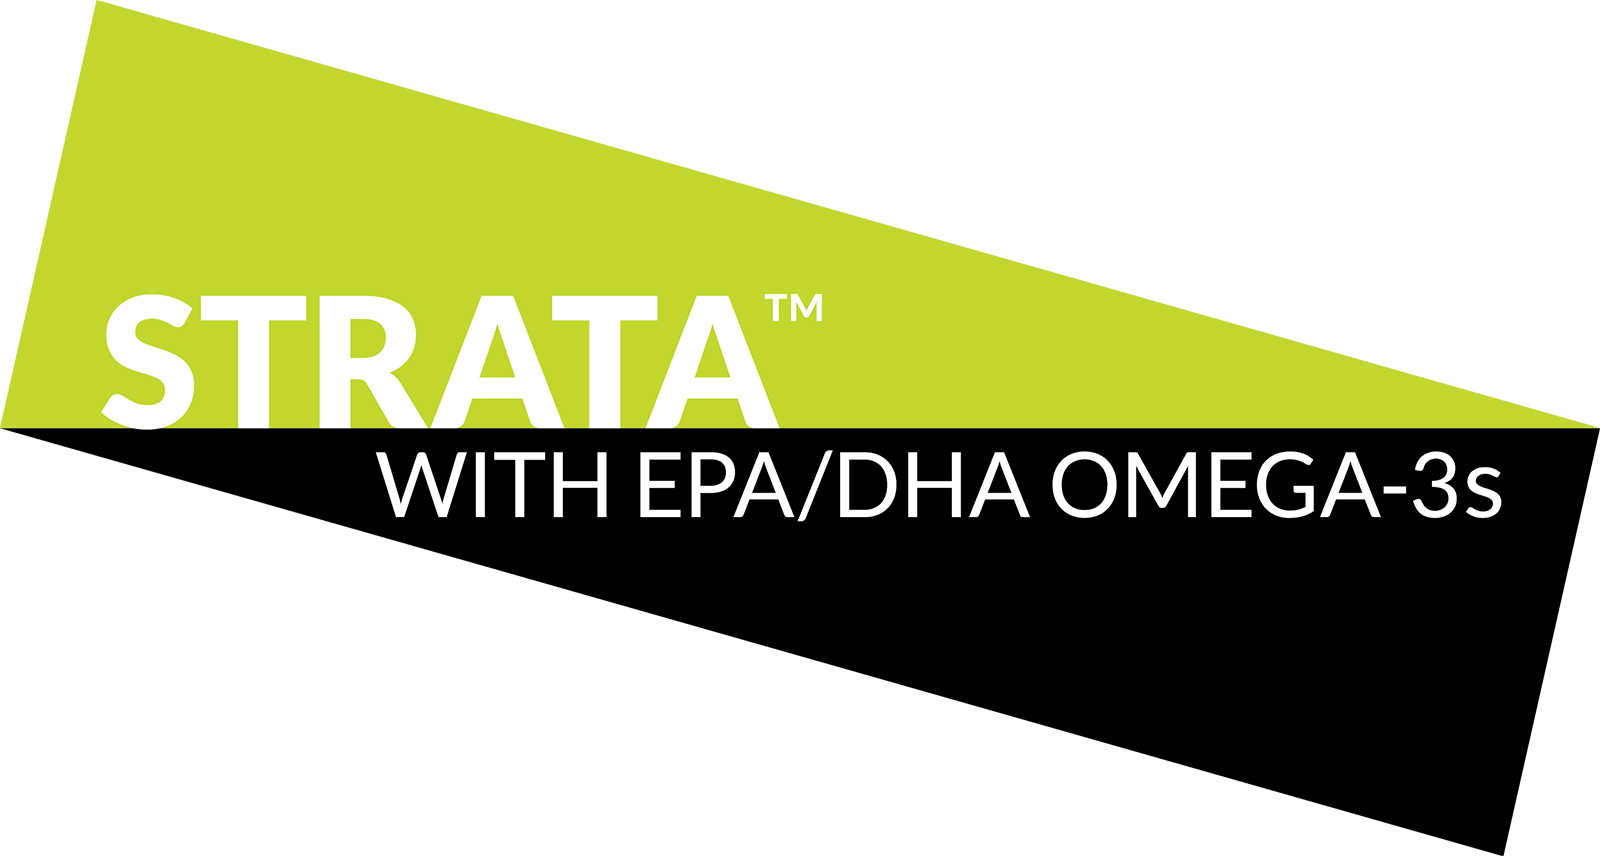 Strata with EPA/DHA omega-3s